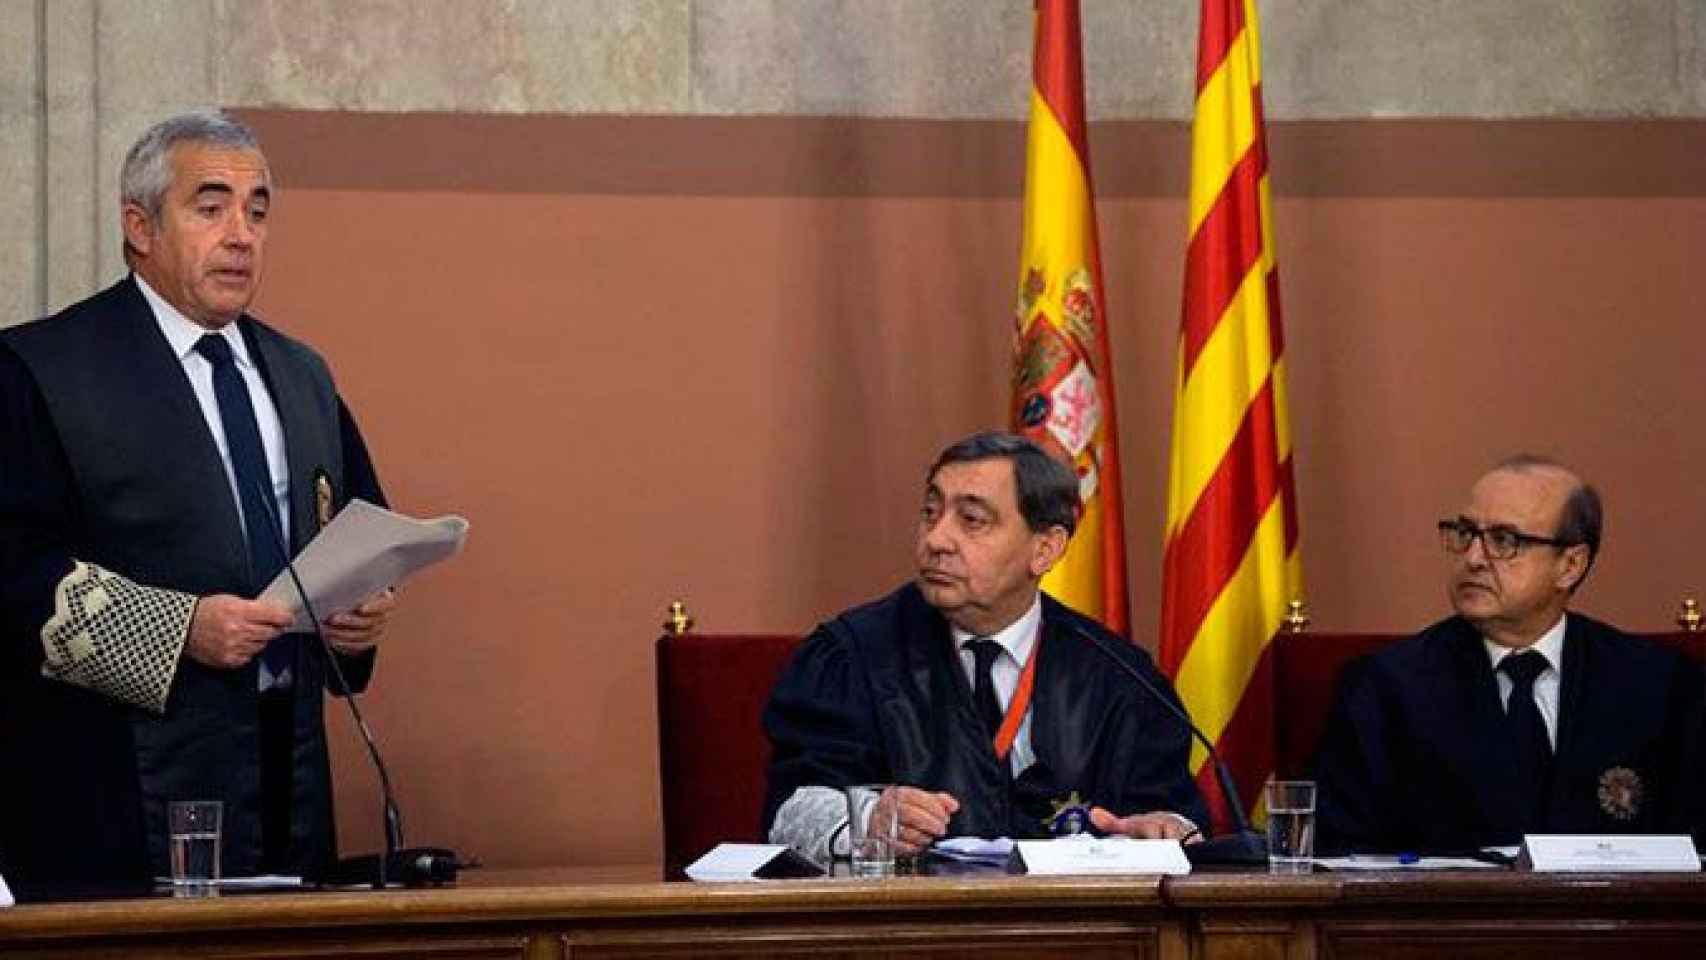 El nuevo fiscal de Cataluña sostiene que la Constitución no es sólo un límite